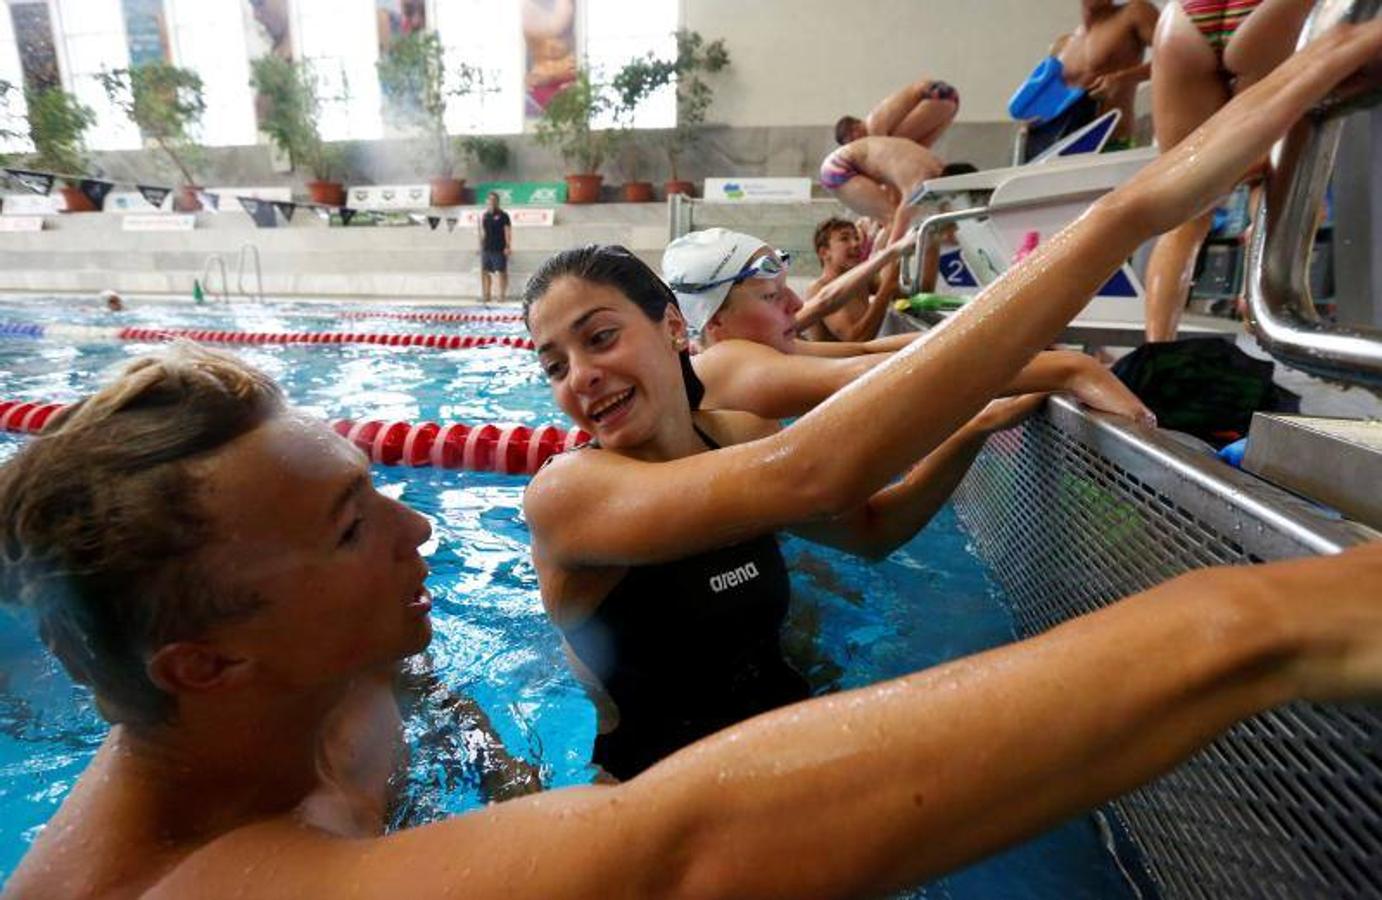 Yusra Mardini se jugó la vida en las aguas del Mediterráneo en 2015 escapando de la guerra en Siria. Se protegió en Alemania, donde entrenó hasta lograr representar a su país en los Juegos Olímpicos de Río de Janeiro en 2016. Ahora, con 20 años, su increíble historia de supervivencia se llevará al cine.